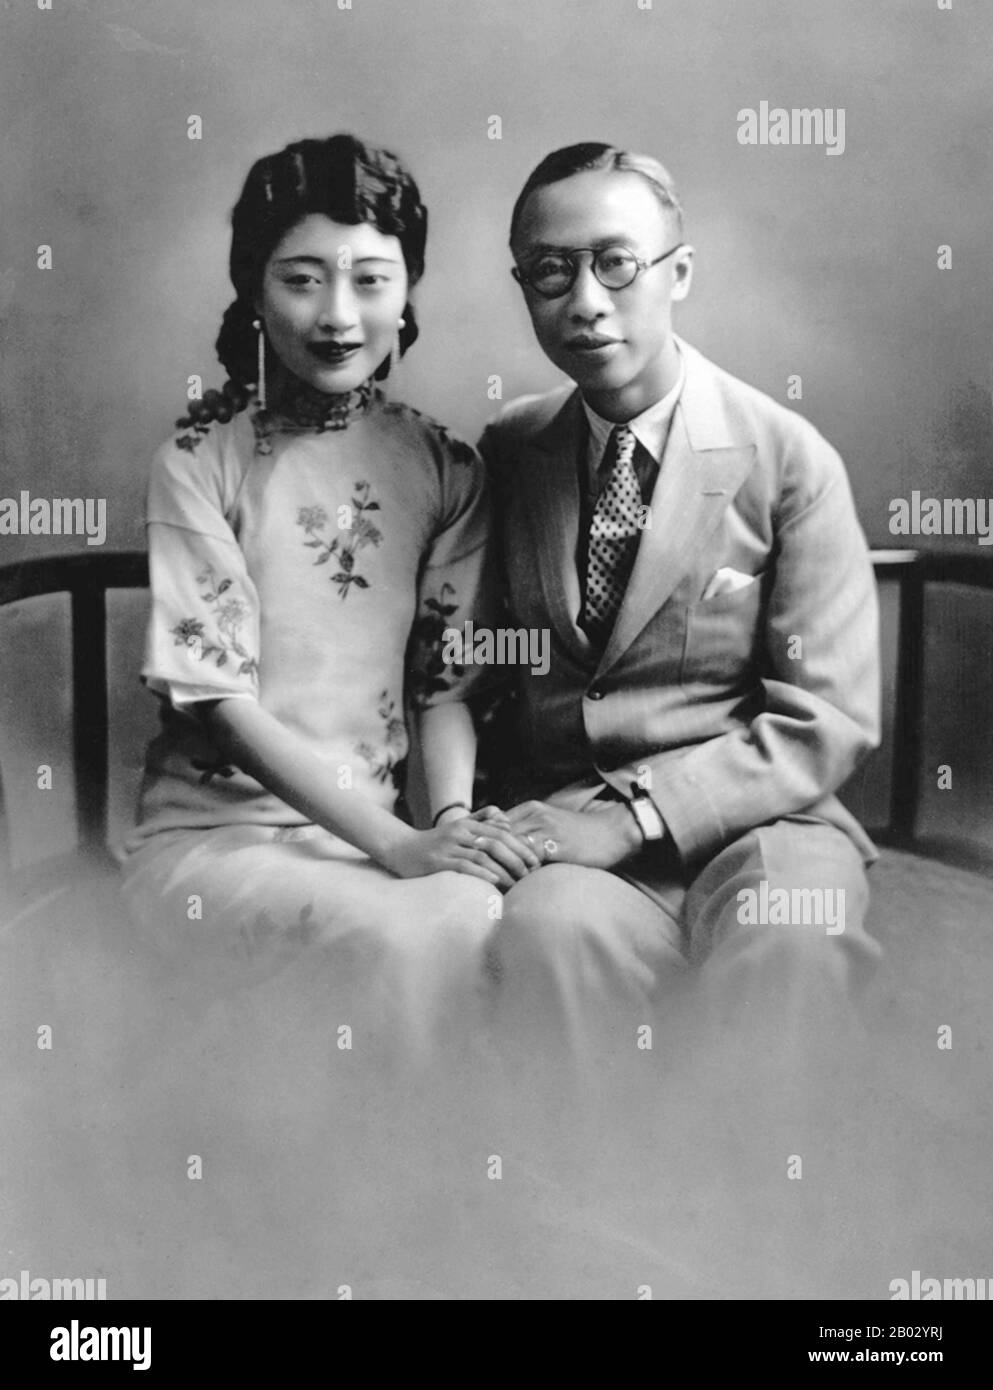 Aisin-Gioro pu Yi (7 febbraio 1906 – 17 ottobre 1967), della famiglia governante Manchu Aisin Gioro, fu l'ultimo imperatore della Cina. Regnò in due periodi tra il 1908 e il 1917, dapprima come imperatore Xuantong dal 1908 al 1912, e nominalmente come imperatore marionette non regnante per dodici giorni nel 1917. Era il dodicesimo e ultimo membro della Dinastia Qing a governare sulla Cina vera e propria. Il Gogulo Wan Rong ('Bello Volto') era la figlia di Rong Yuan, il ministro Degli Affari Interni del governo Qing e capo di una delle famiglie più importanti e ricche della Manciuria. All'età di 17 anni, Wan Rong Foto Stock